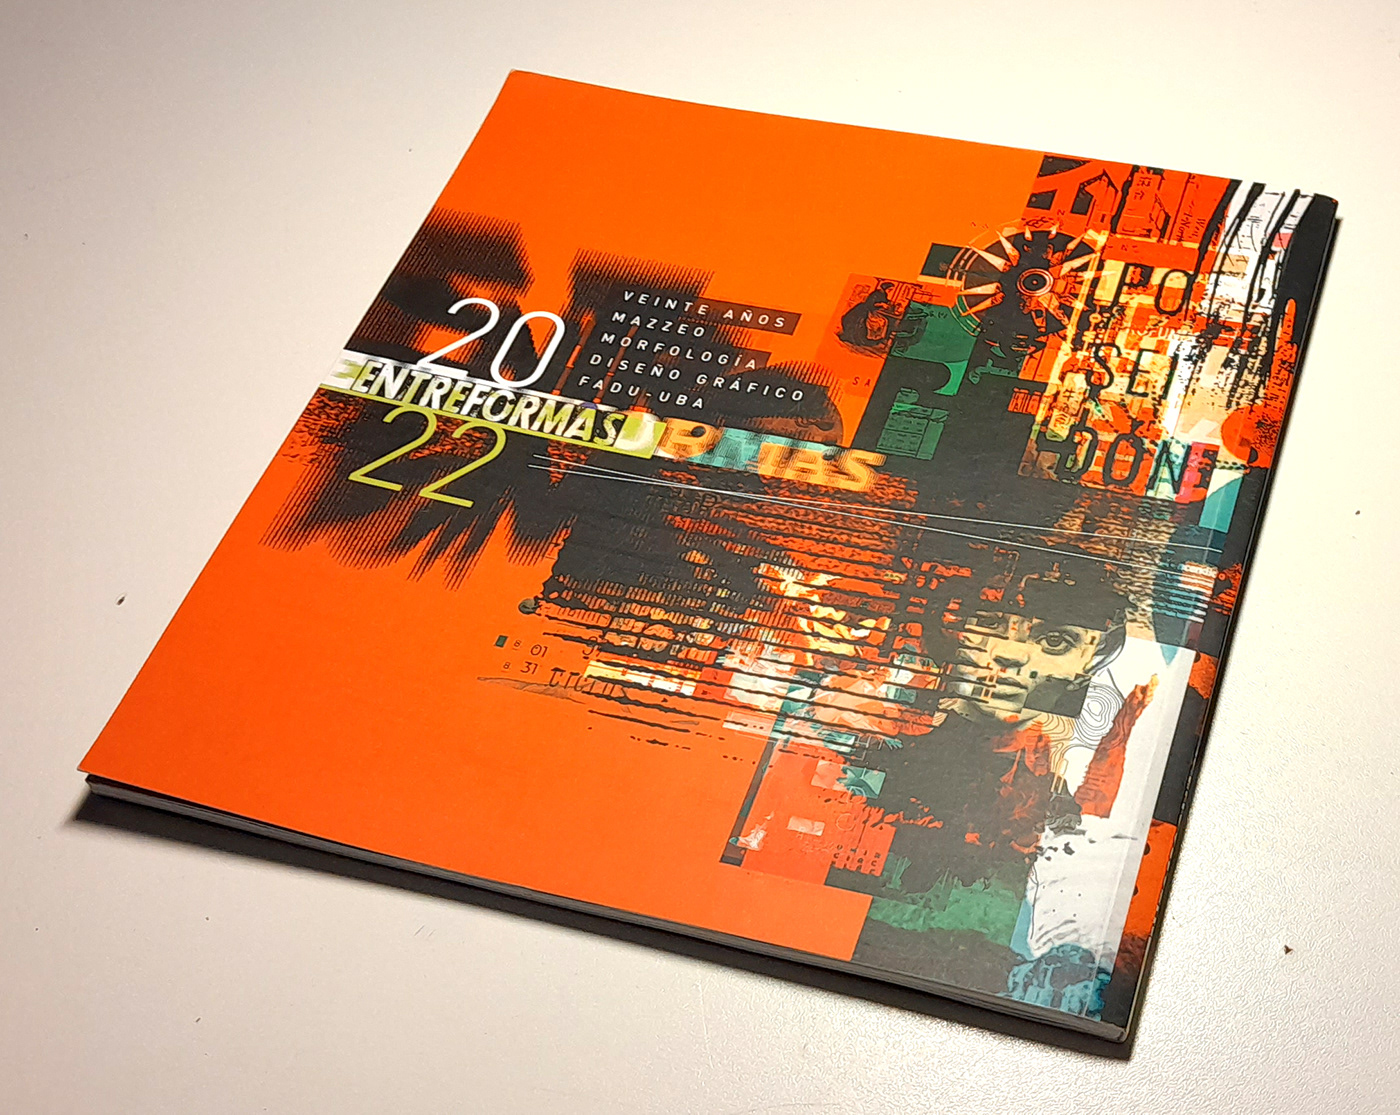 diseño gráfico Diseño editorial graphic design  book design editorial design  book cover